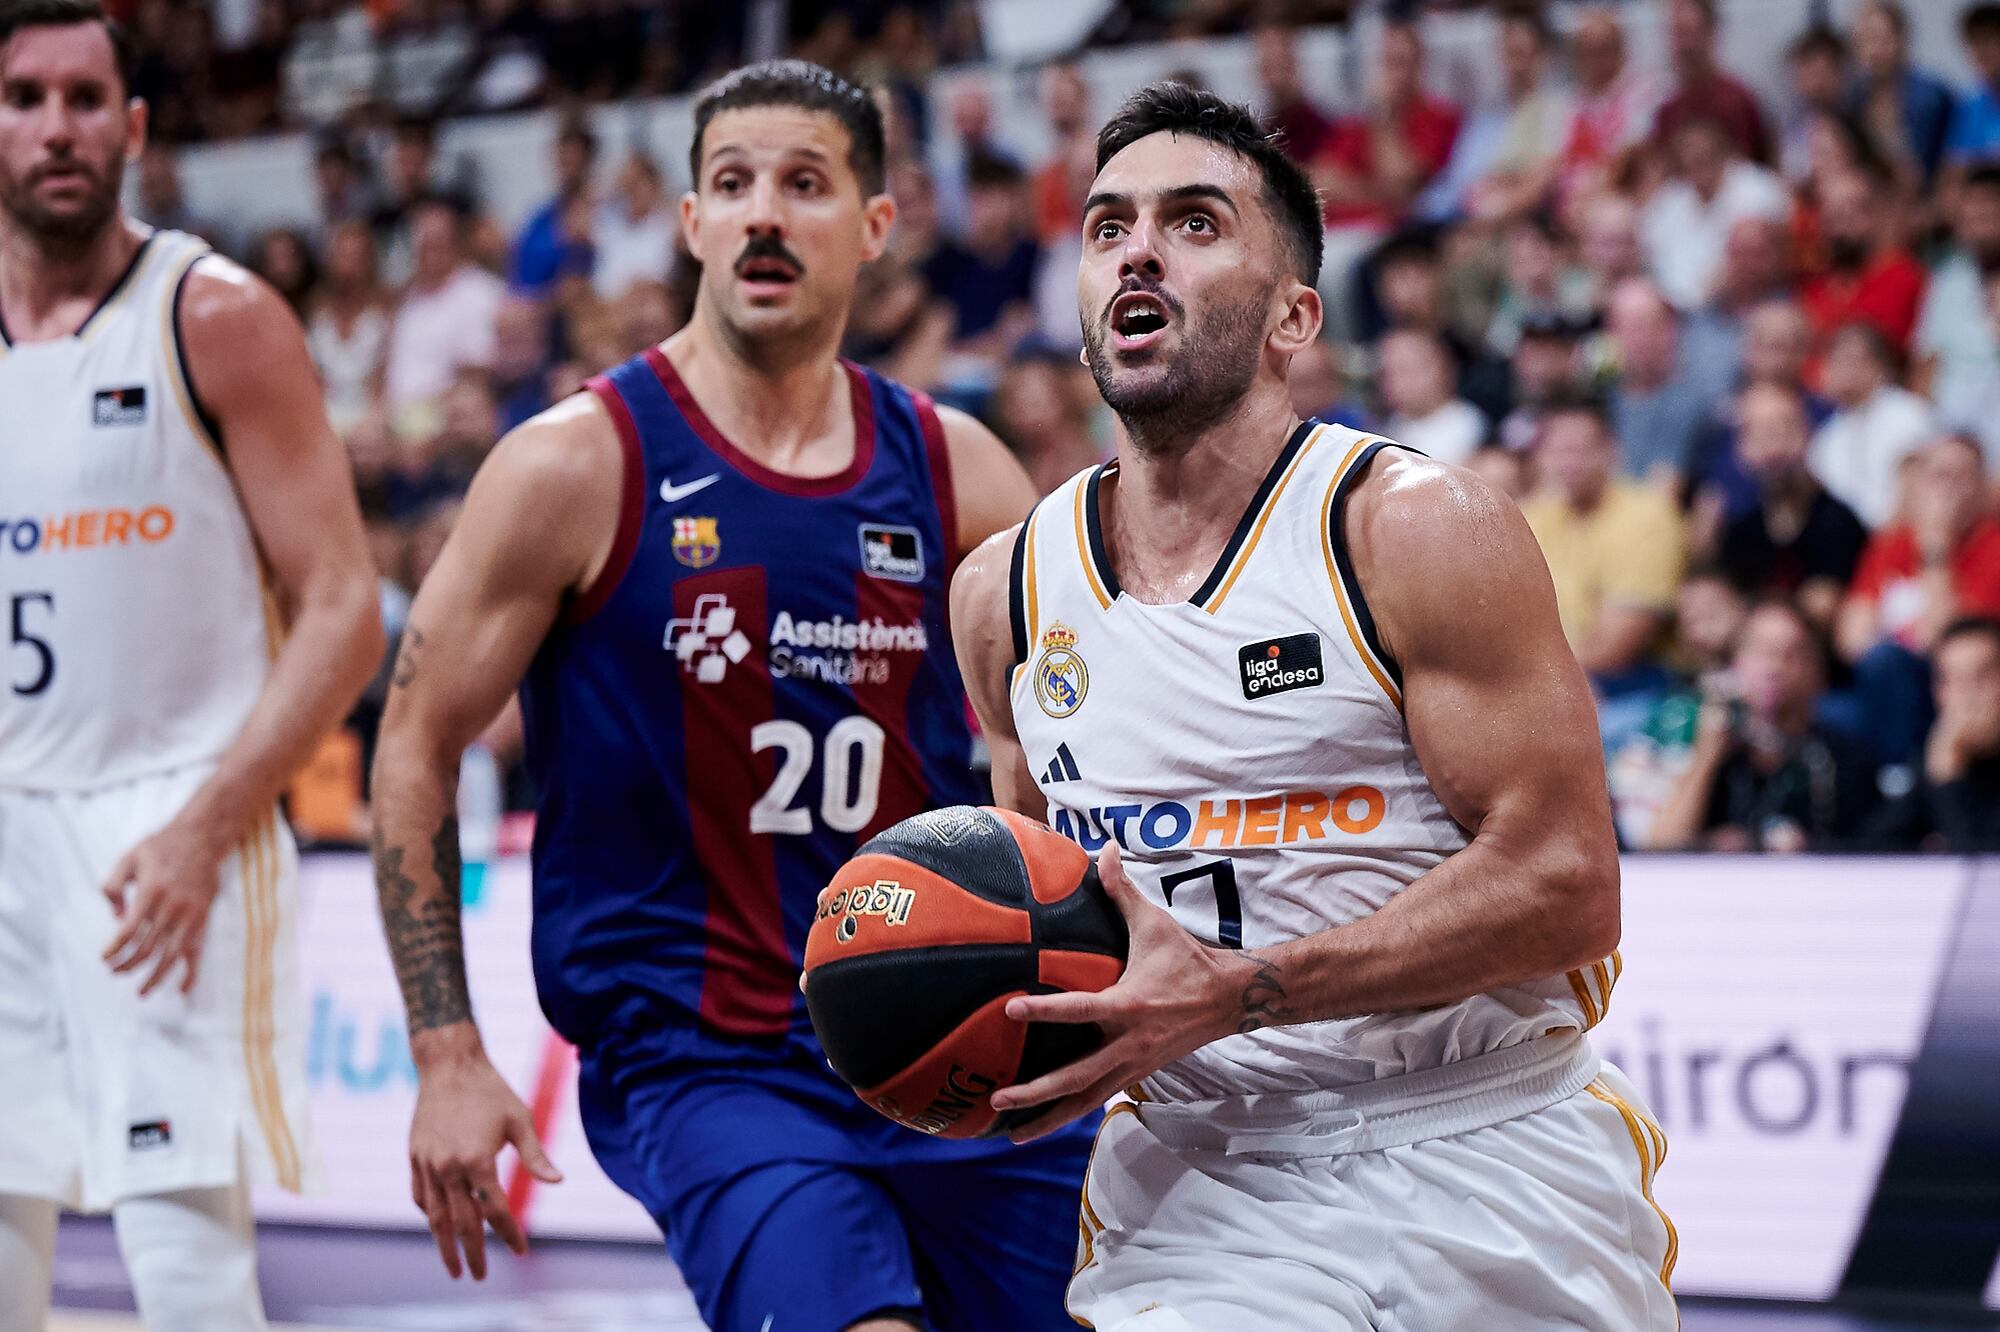 Ahora, en el tercer episodio de su semifinal de la Liga ACB, de España, Nicolás Laprovittola y Barcelona serán locales frente a Facundo Campazzo y Real Madrid.